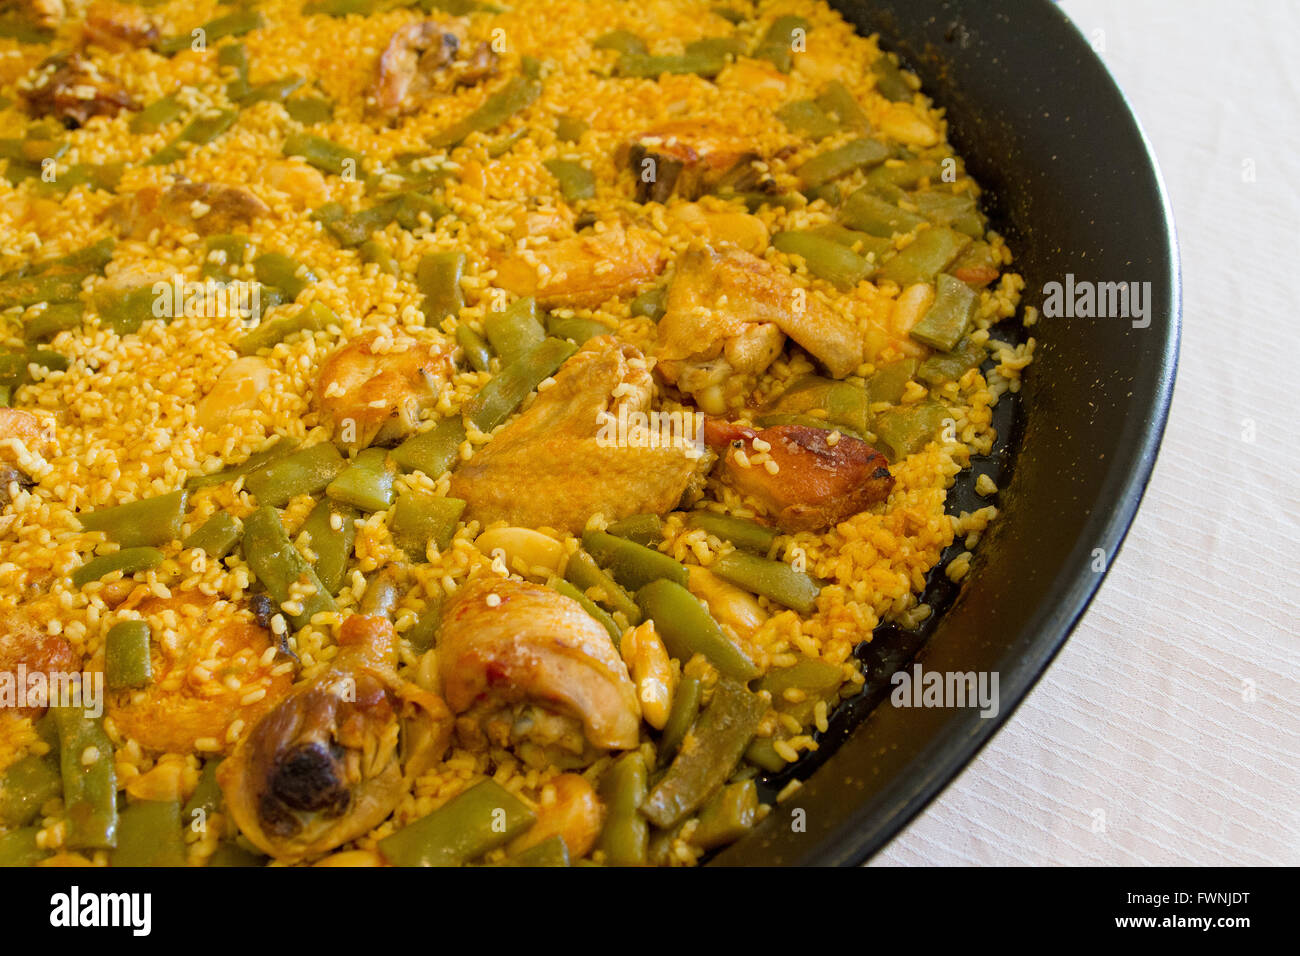 Paella dish from Valencia Spain Stock Photo